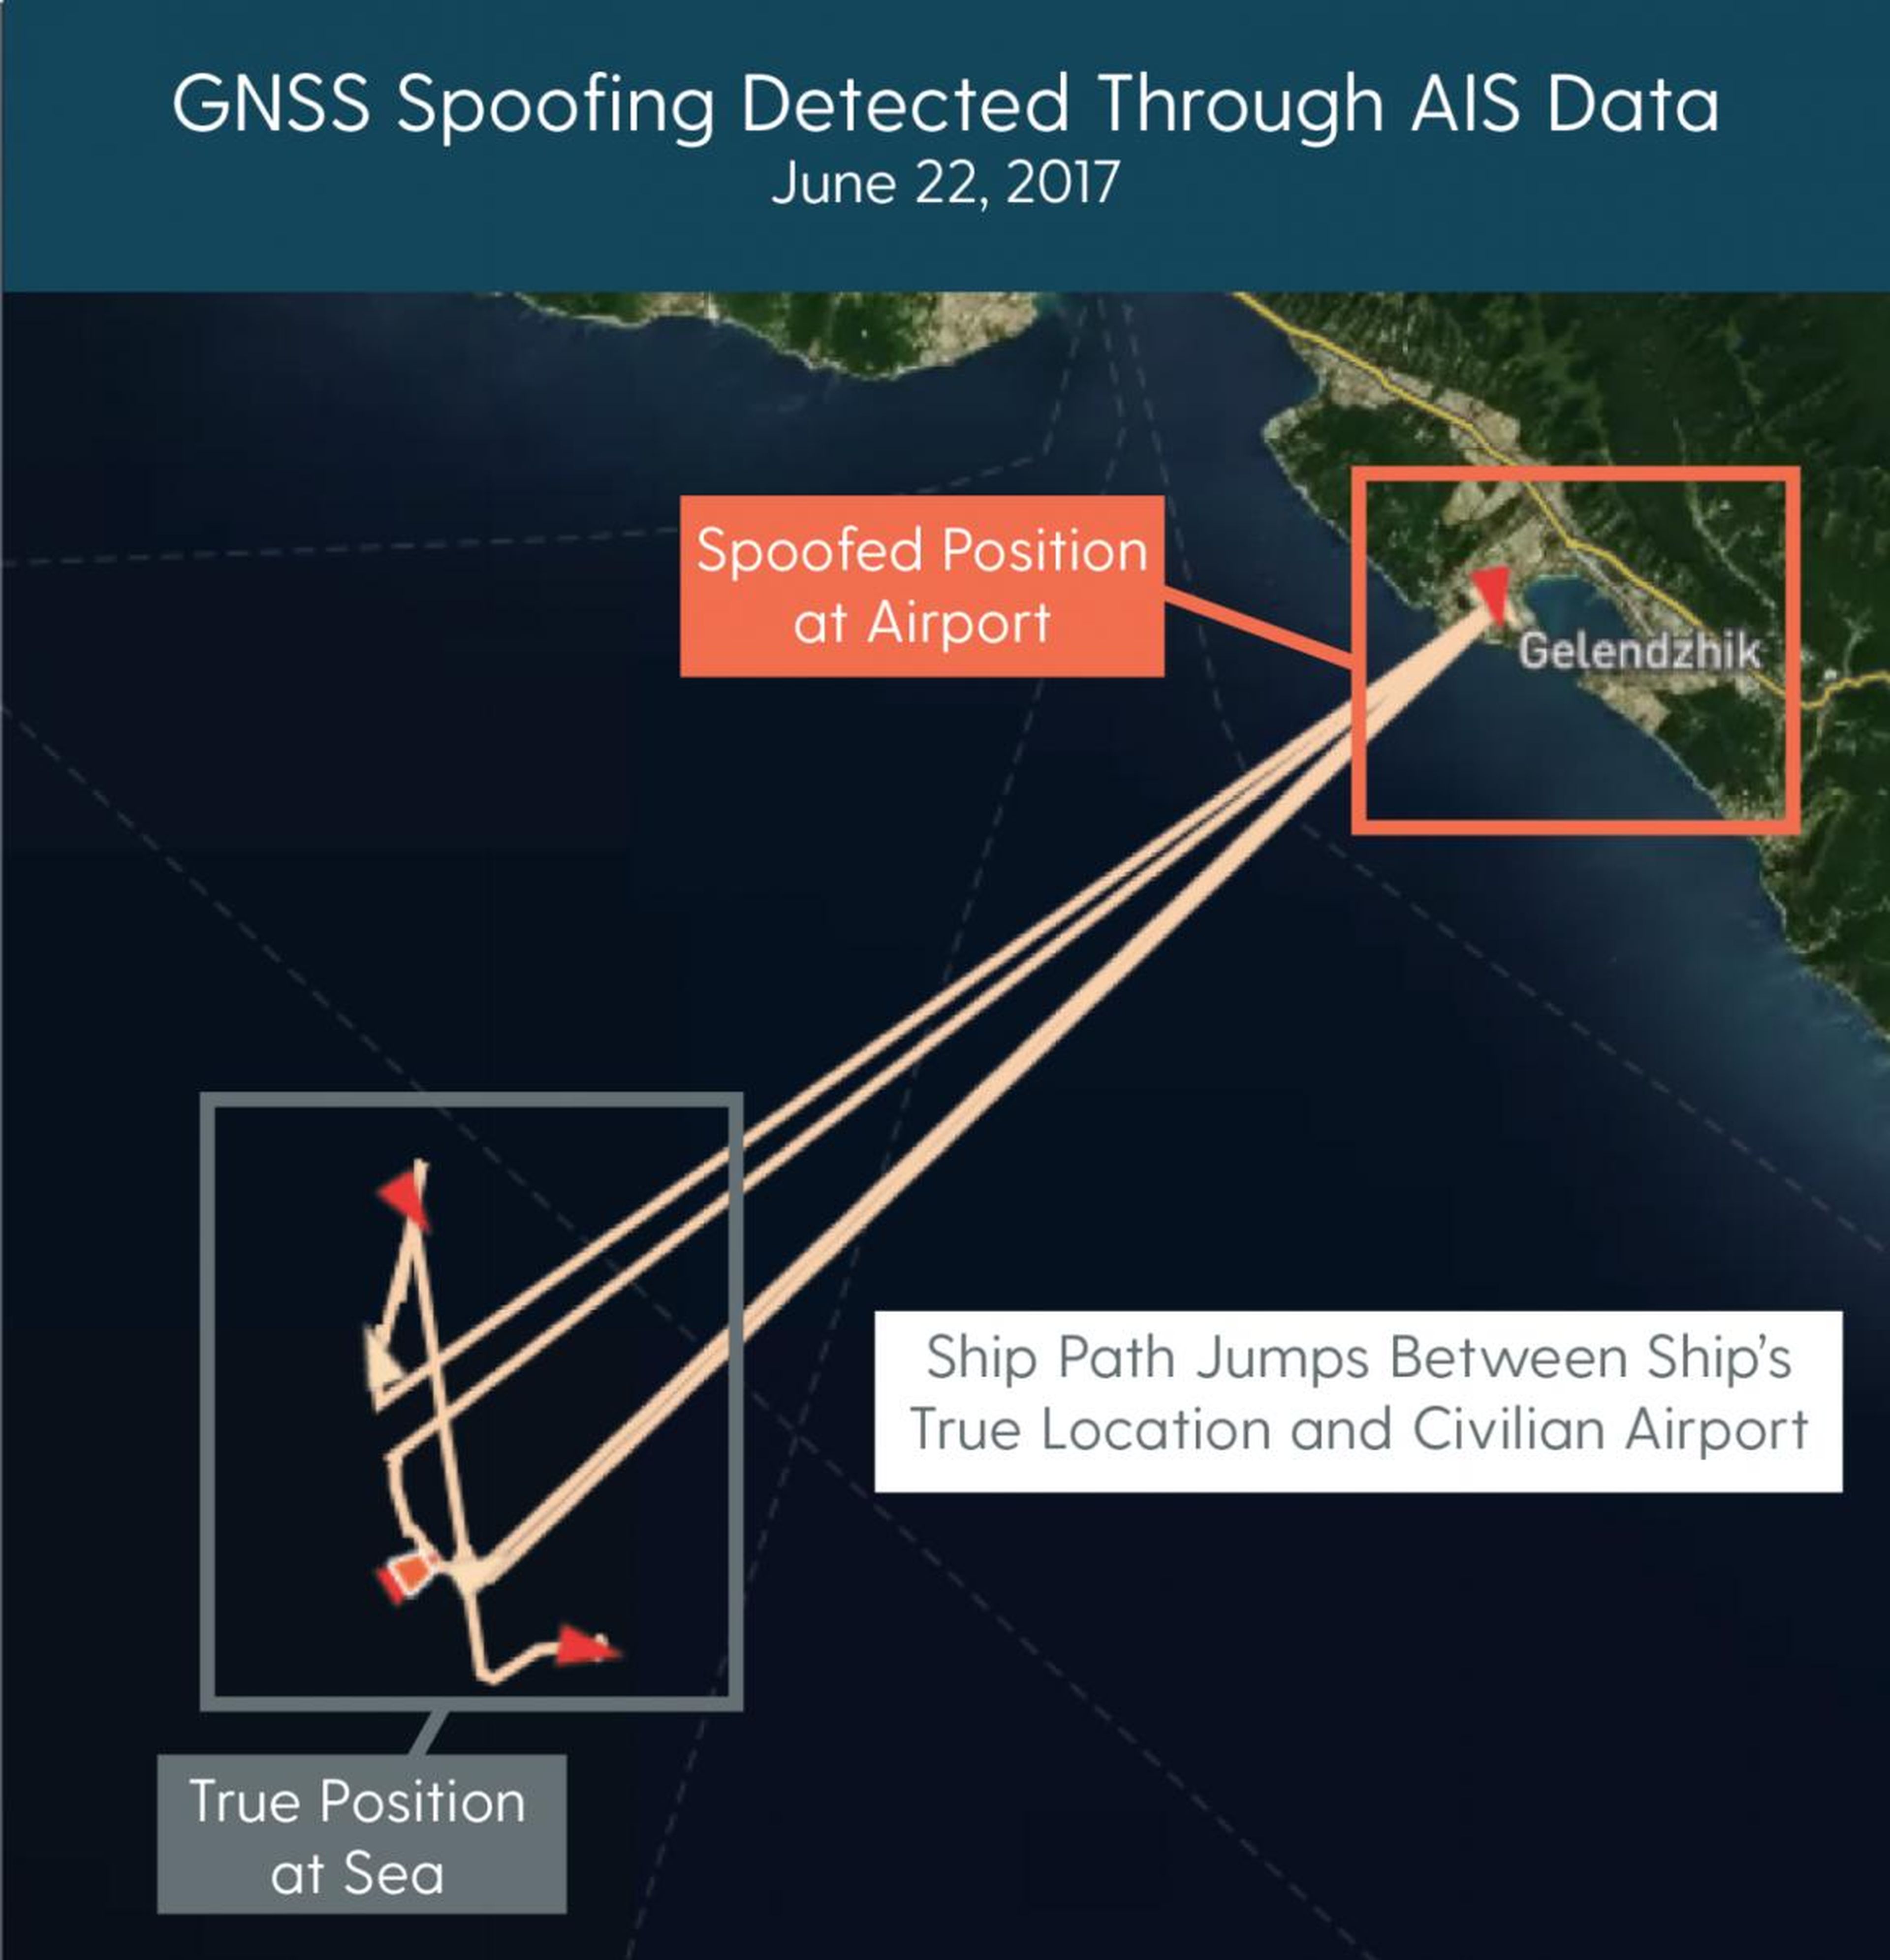 Este diagrama muestra las señales GPS de un barco que salta entre la ubicación exacta en el mar y una ubicación falsa en un aeropuerto cercano.